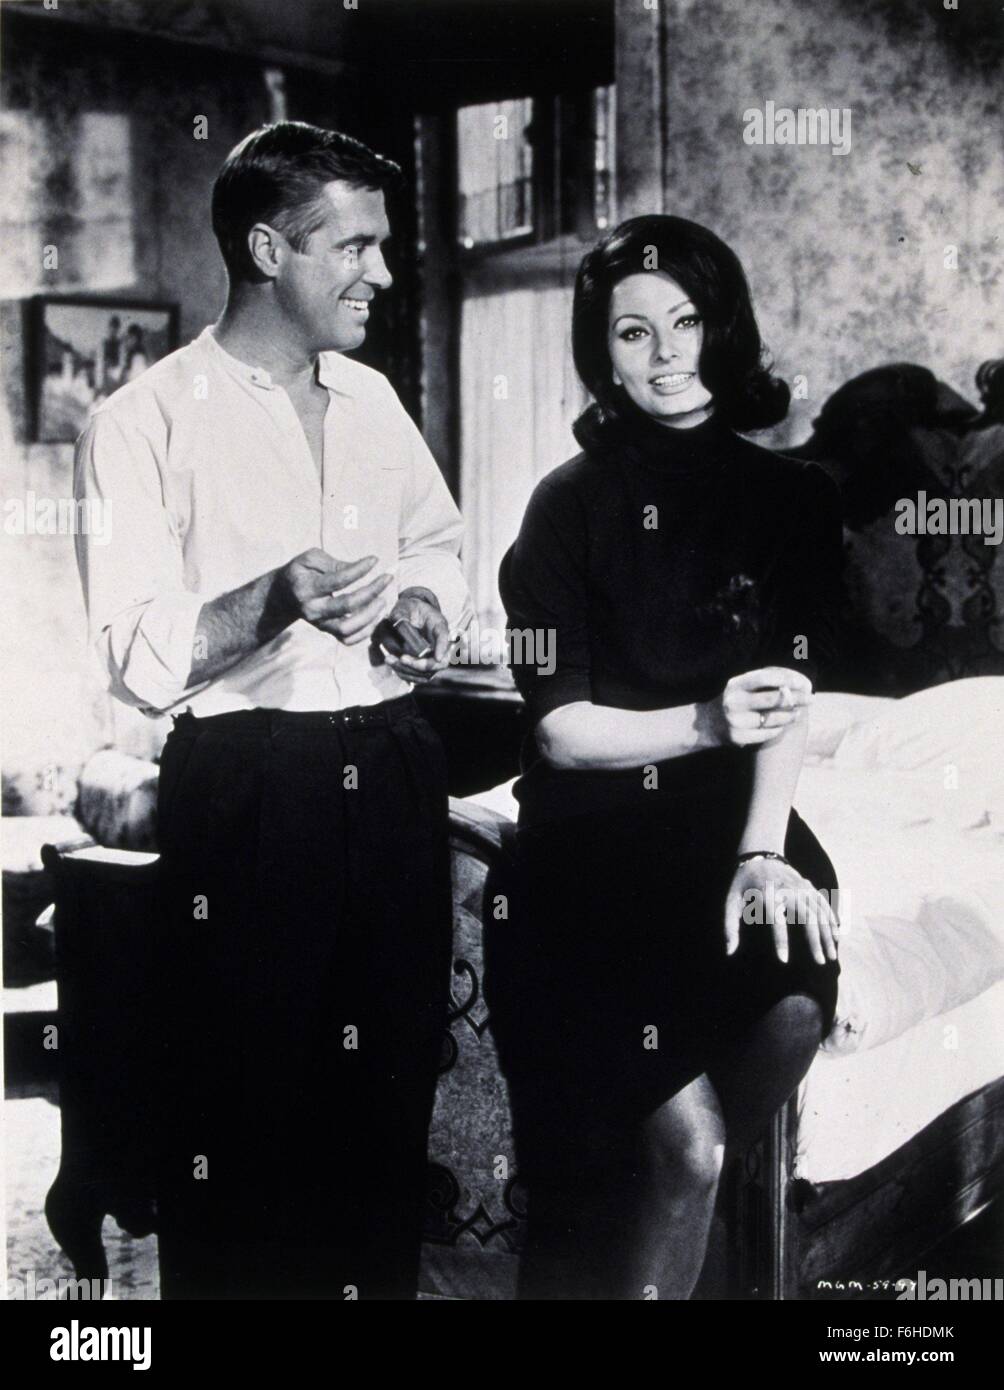 1965, il titolo del film: operazione di tiro con la balestra, Direttore: Michael Anderson, Studio: MGM, nella foto: Michael Anderson, Sophia Loren. (Credito Immagine: SNAP) Foto Stock